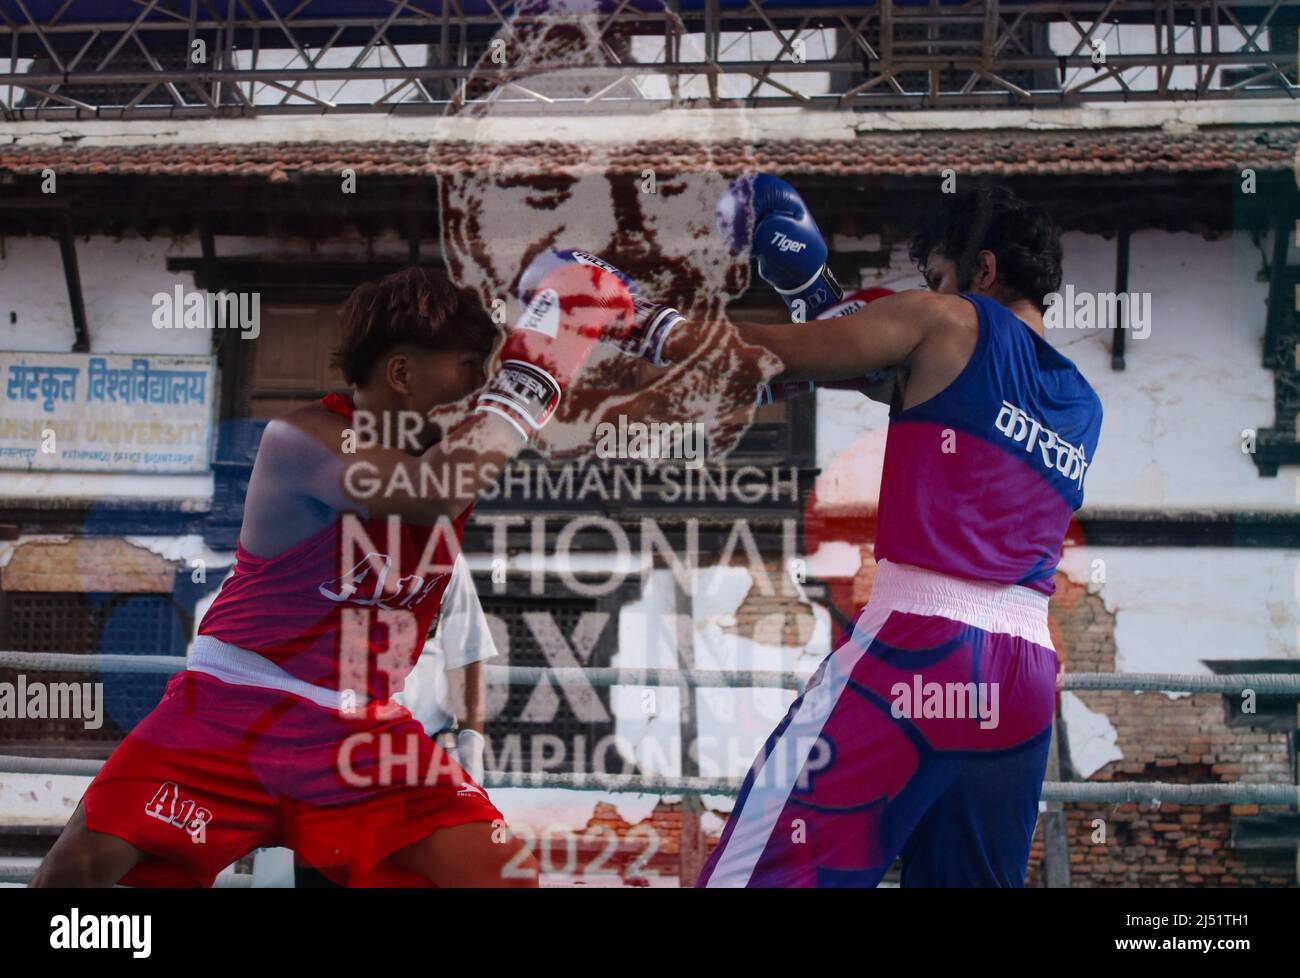 Am 19,2022. April in Kathmandu, Nepal. Die angreifenden Boxer werden  während der Ganeshman Singh National Boxing Championship mit einem  Doppelschuss an der Haltestafel mit dem Namen der Boxmeisterschaft  eingefangen. (Foto von Abhishek